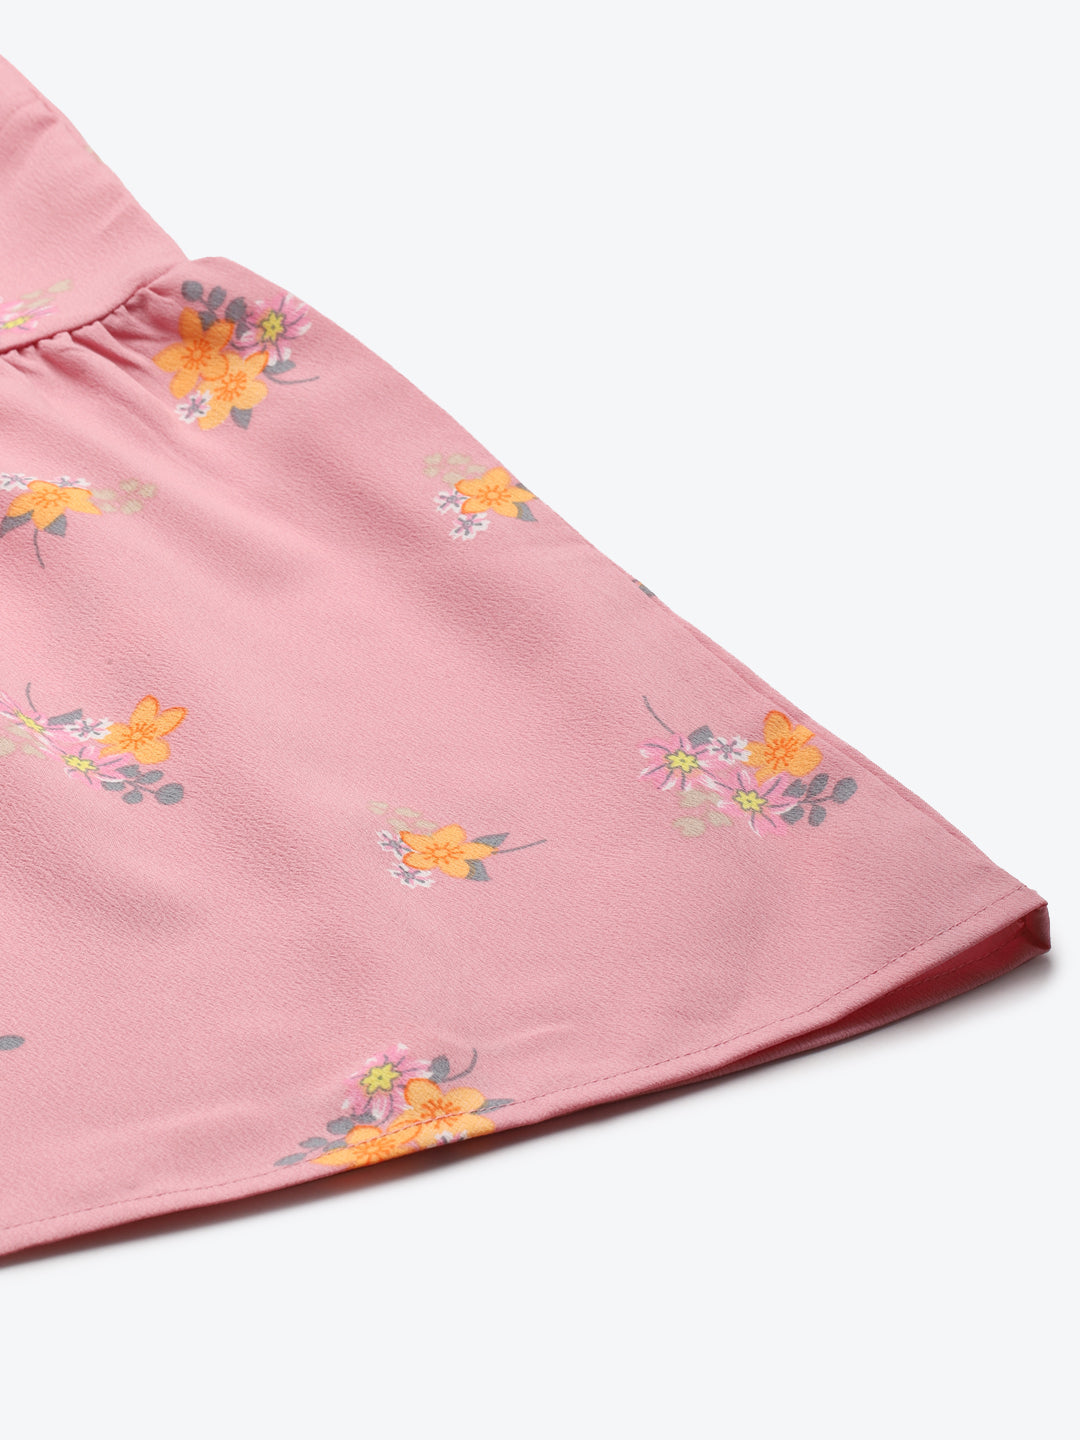 Women Pink Floral Frill Hem Skirt